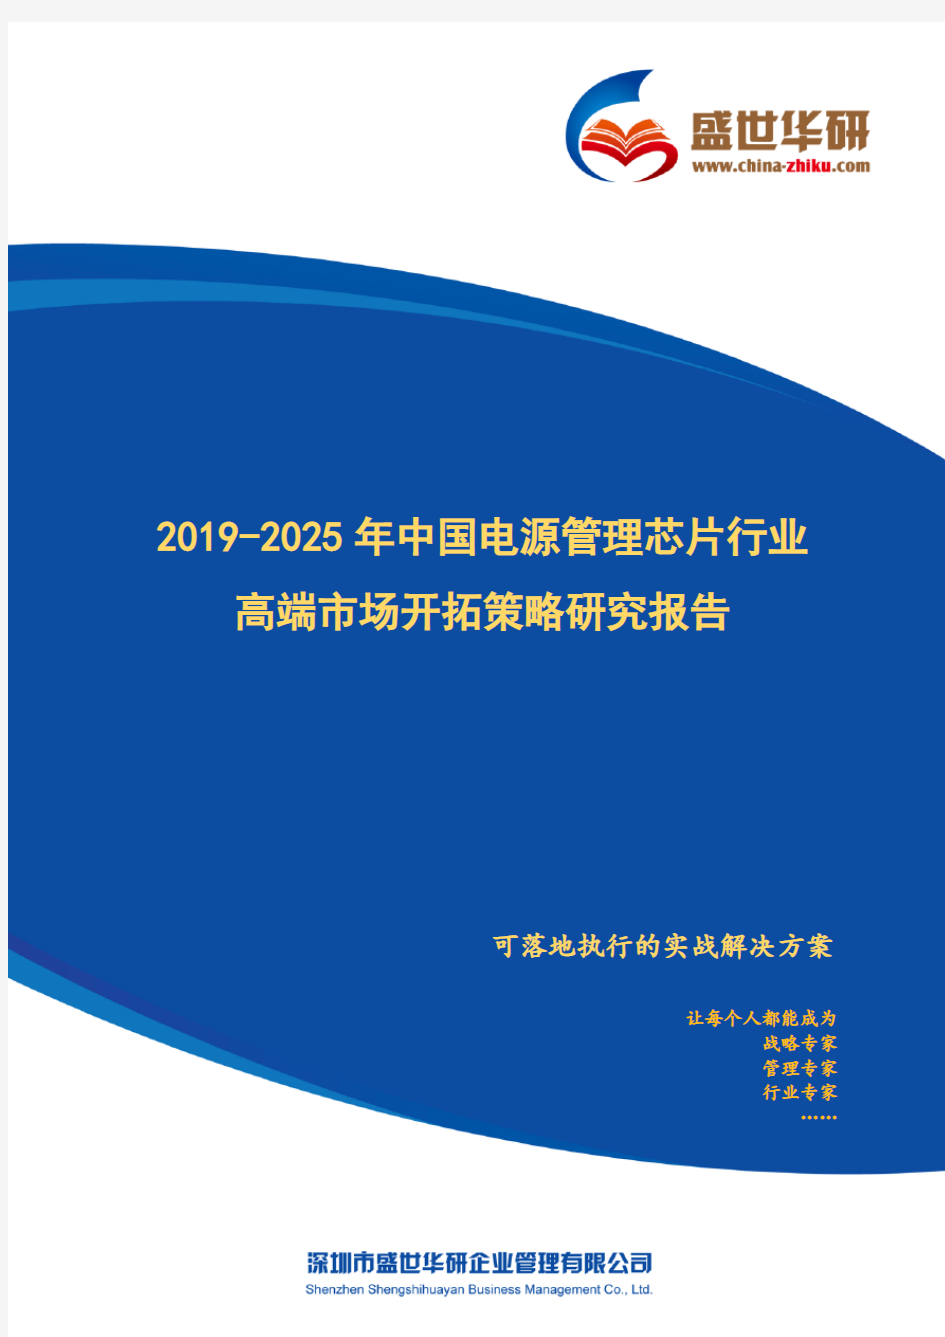 【完整版】2019-2025年中国电源管理芯片行业高端市场开拓策略研究报告